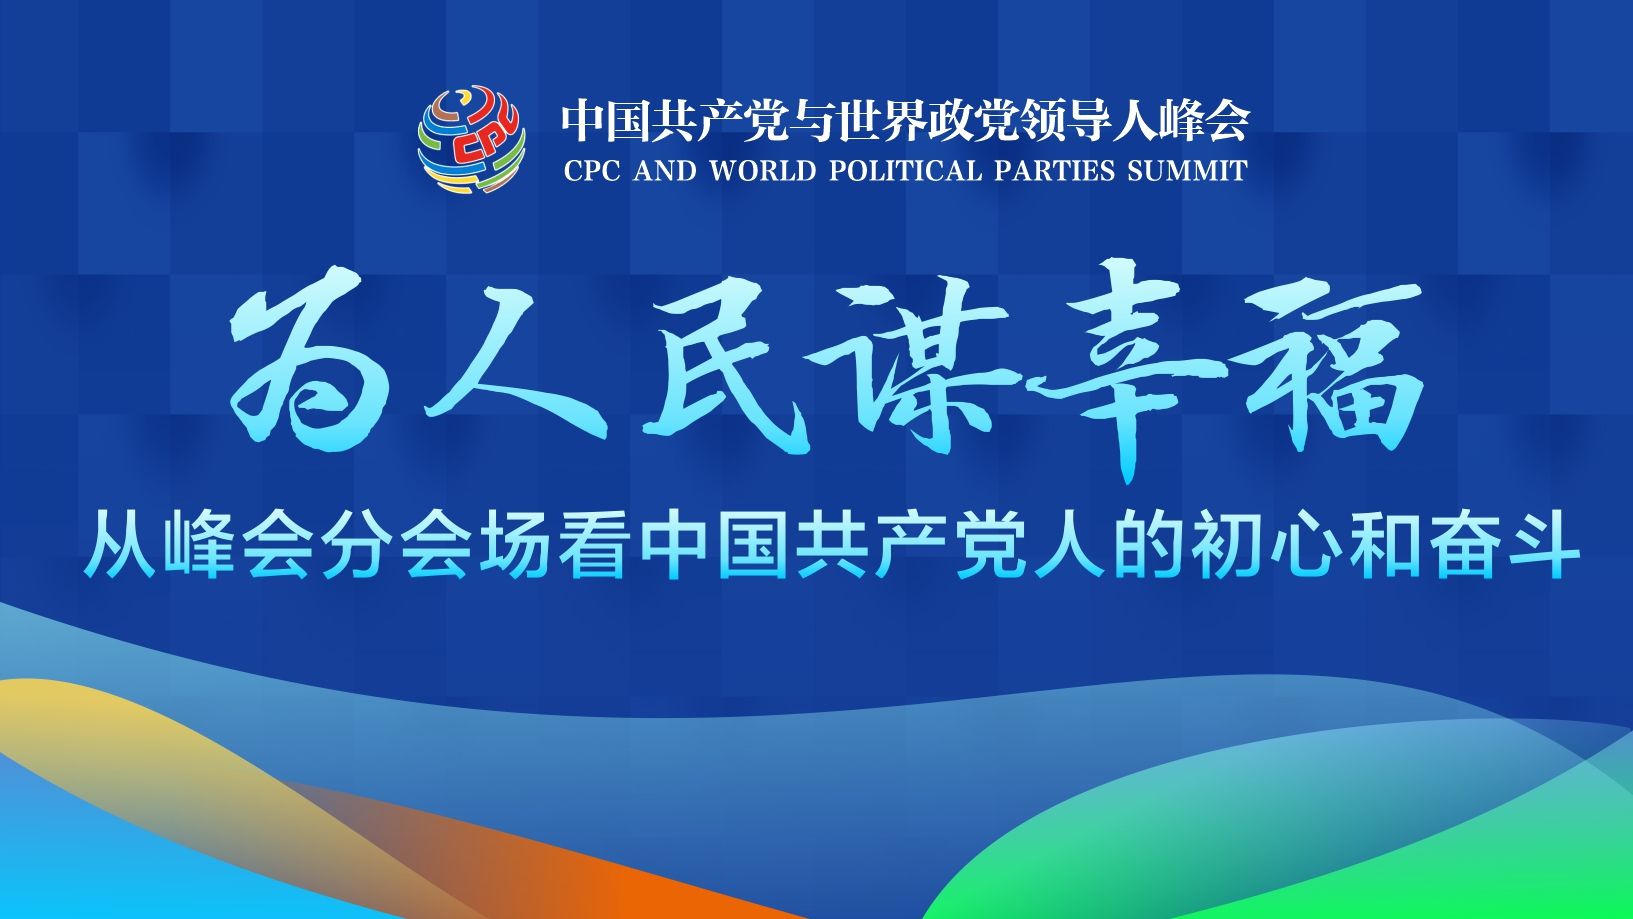 走进中国共产党与世界政党领导人峰会分会场